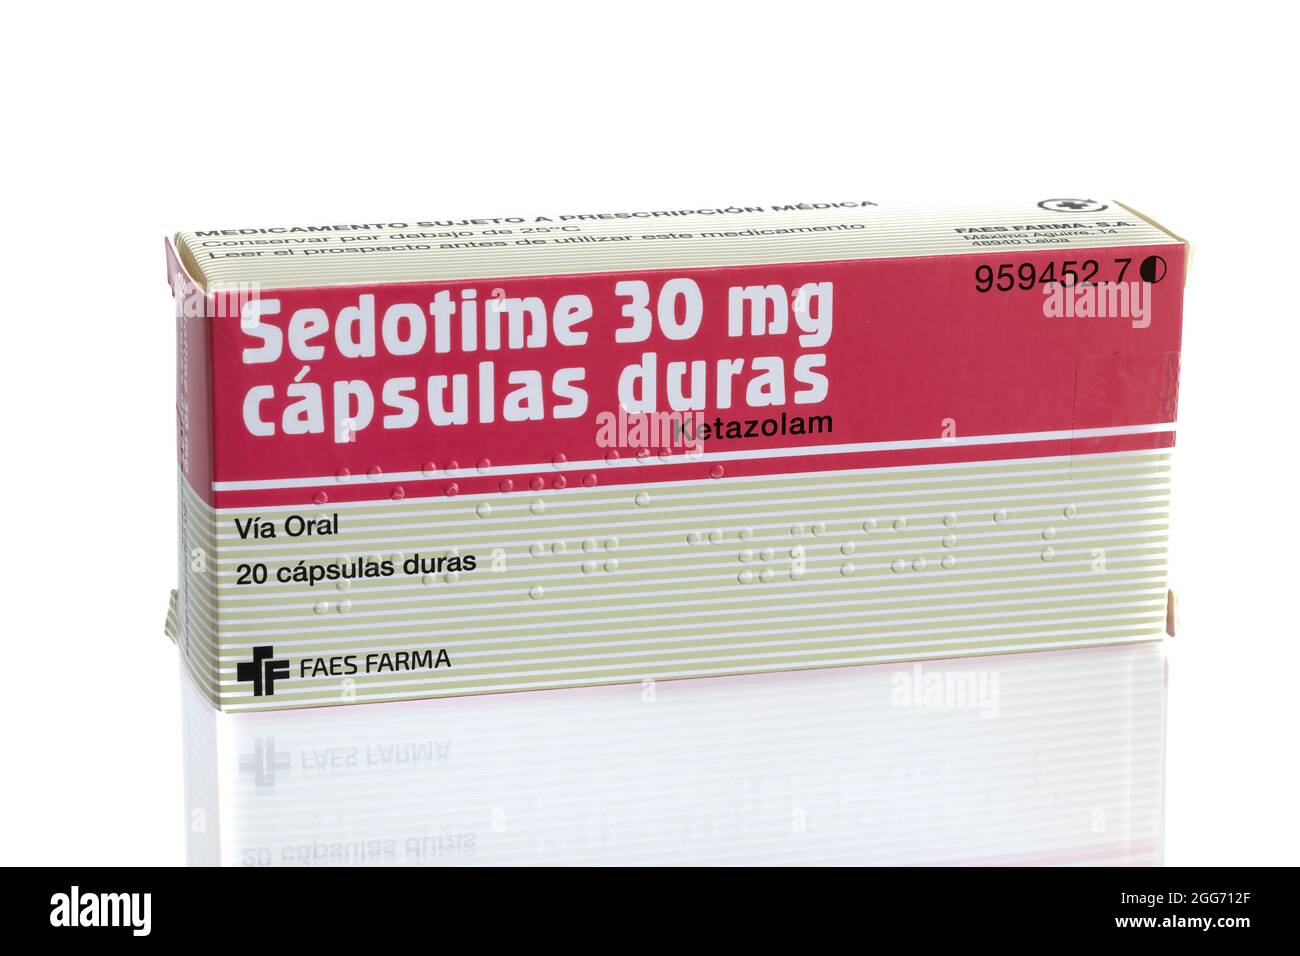 Huelva, Espagne - 28 août 2021 : boîte espagnole de la marque Sedotime de Ketazolam. Dérivé de benzodiazépine de médicament. Il possède anxiolytique, anticonvulsant, sed Banque D'Images